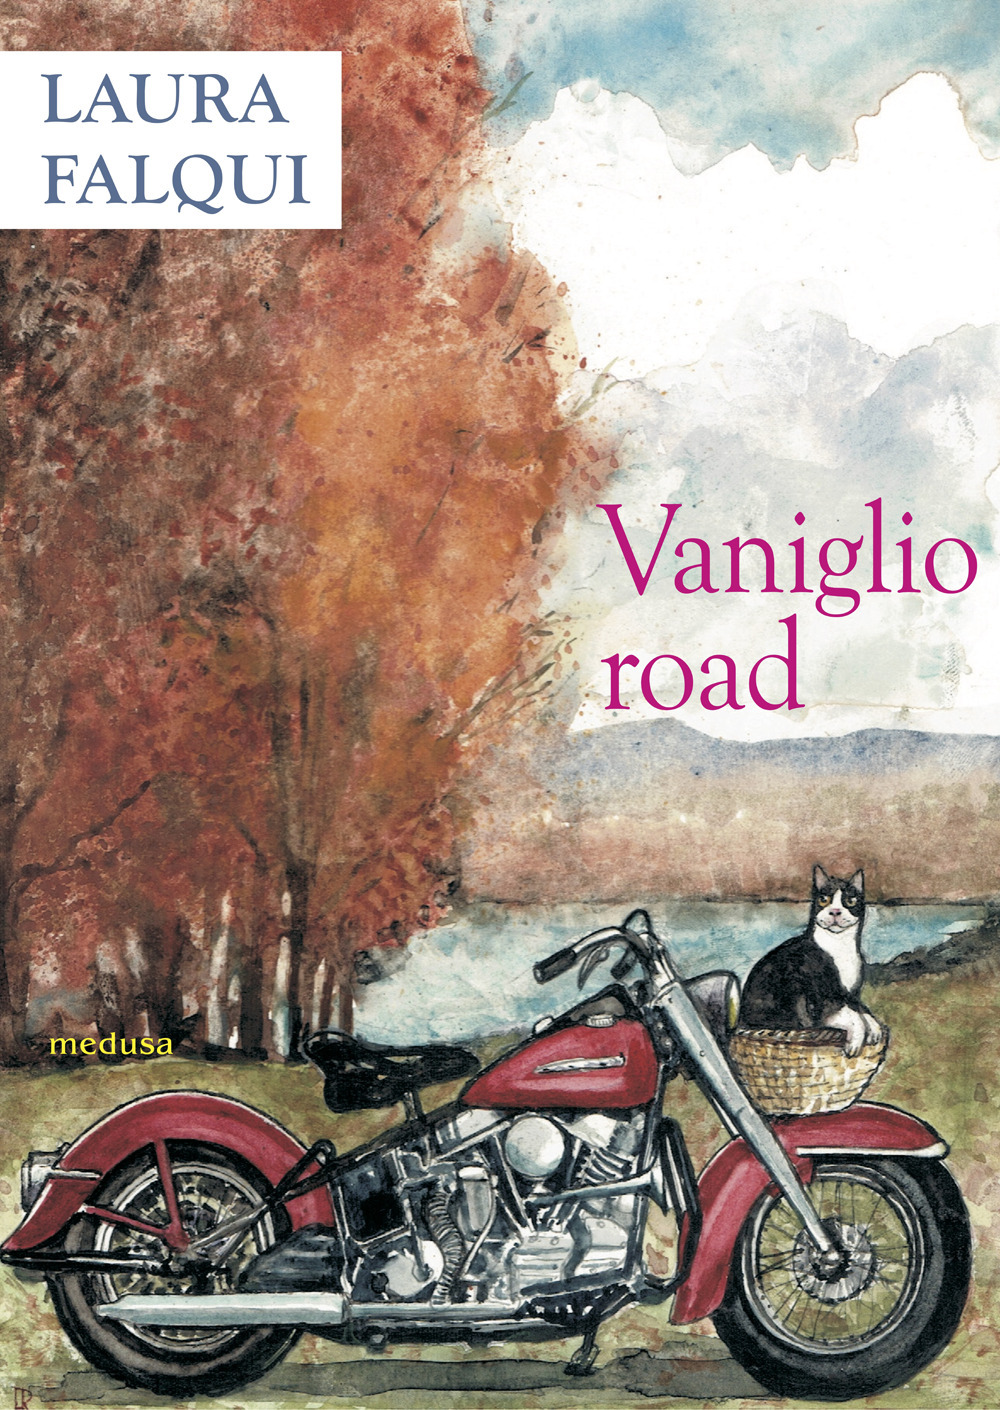 Vaniglio road